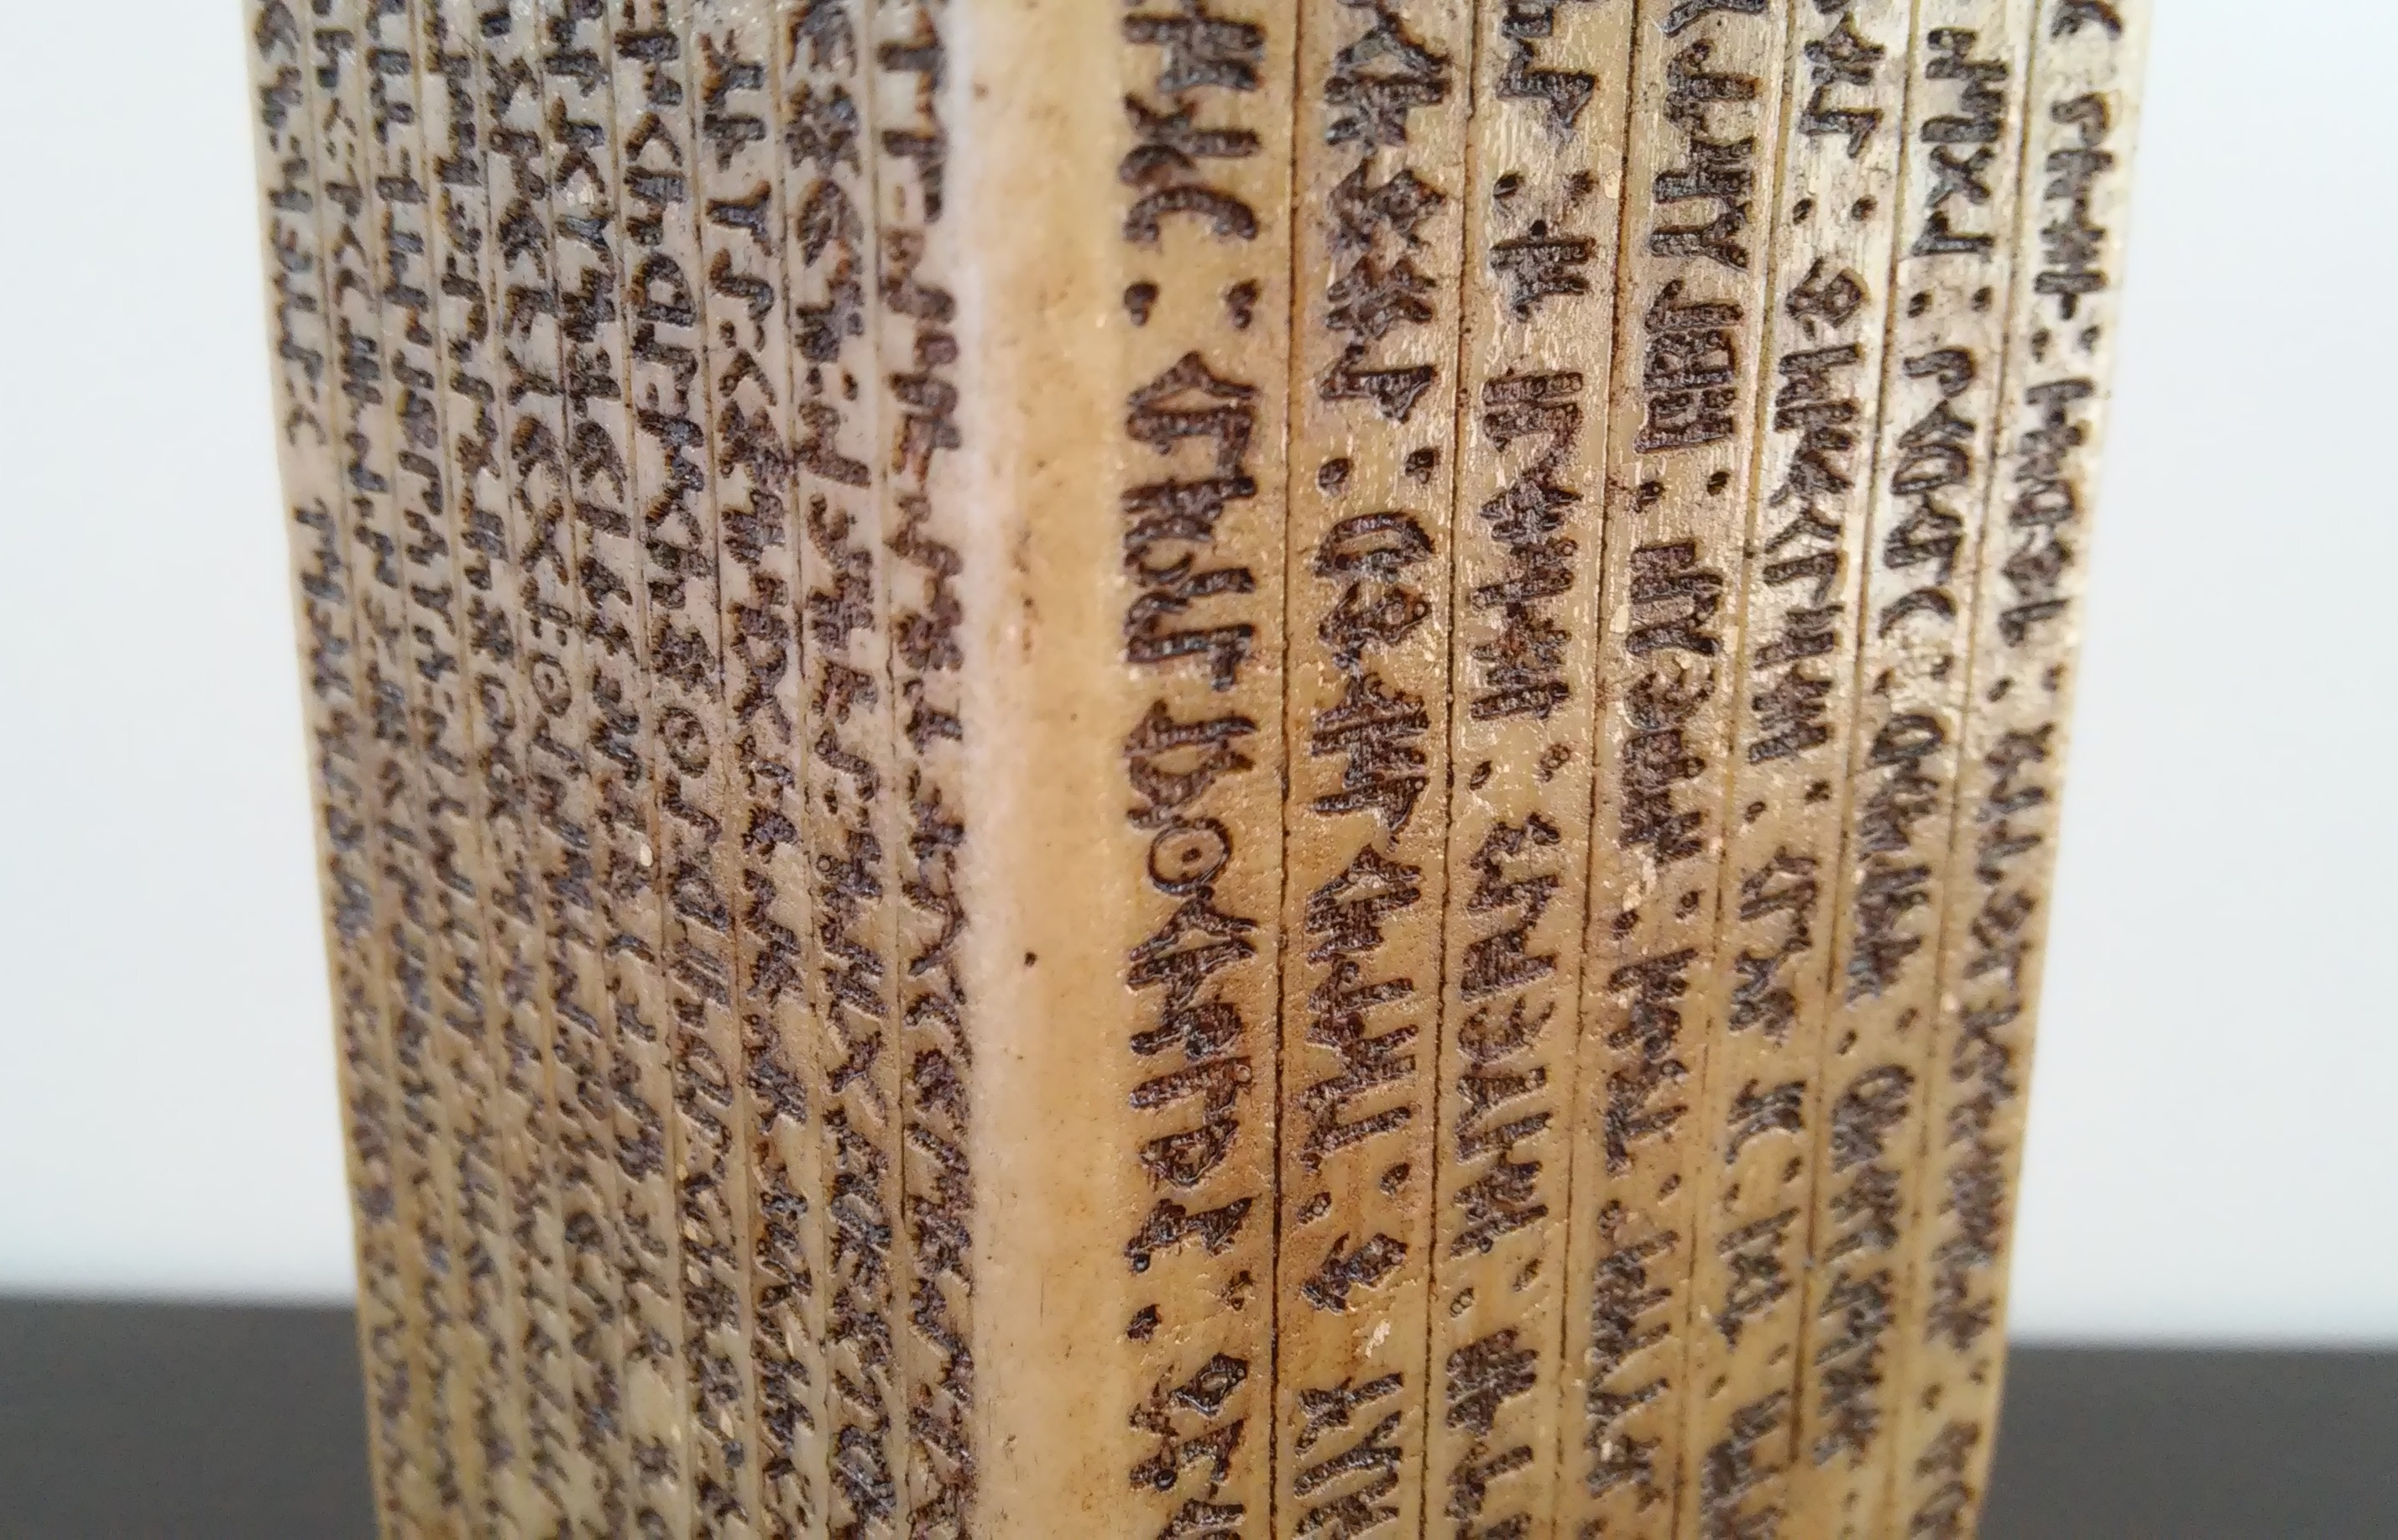 orhun anıtları bilge kagan kitabeleri yazıtları göktürk abideleri tonyukuk kültigin maketi biblosu kitabesi abidesi heykeli yazıtı yazıt anıt abide yapımı heykel